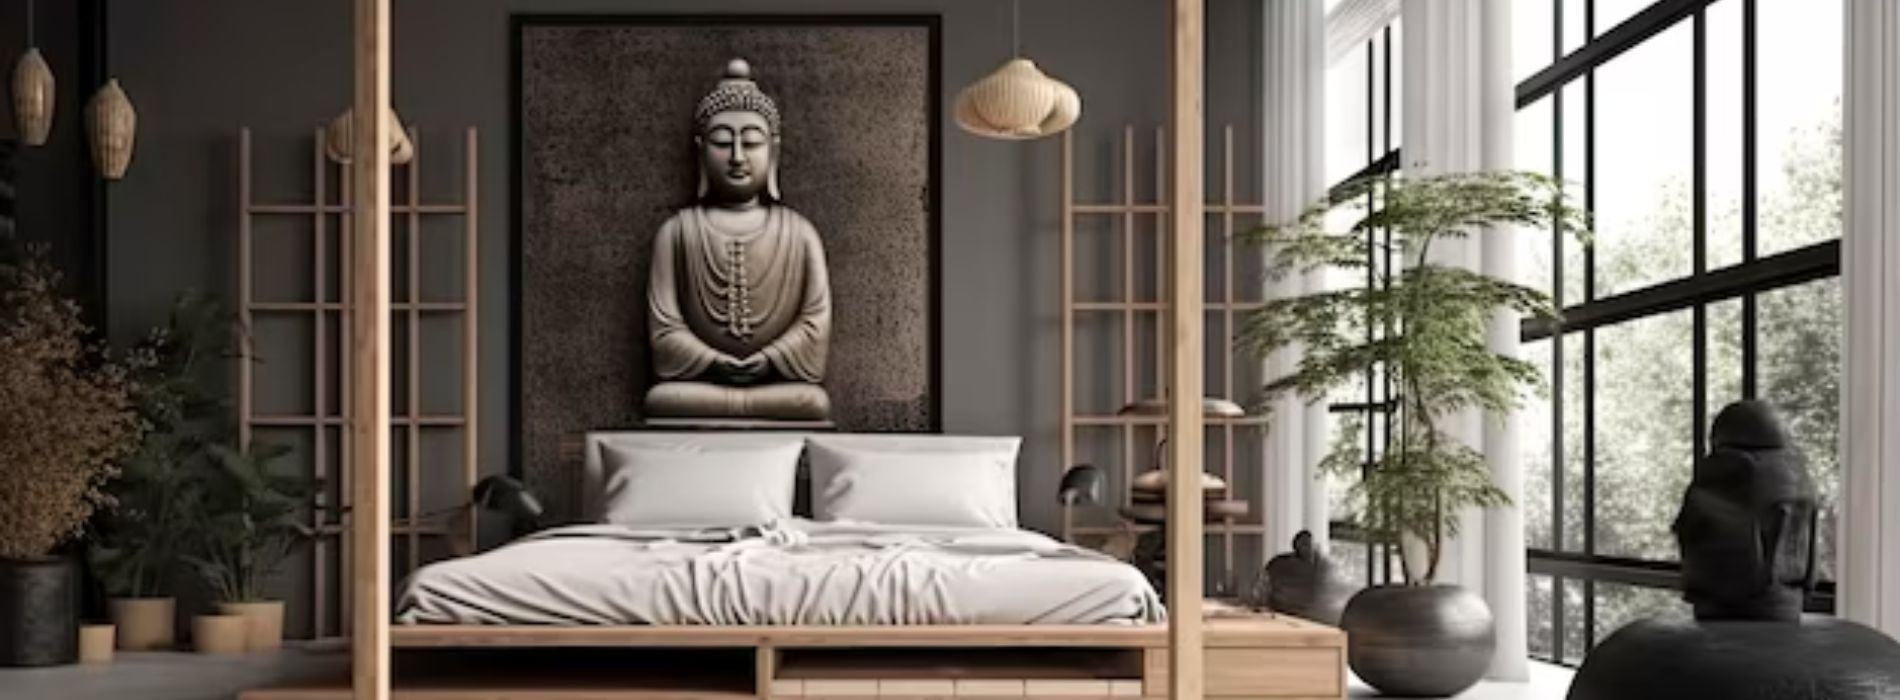 Peut on mettre un bouddha dans une chambre ?